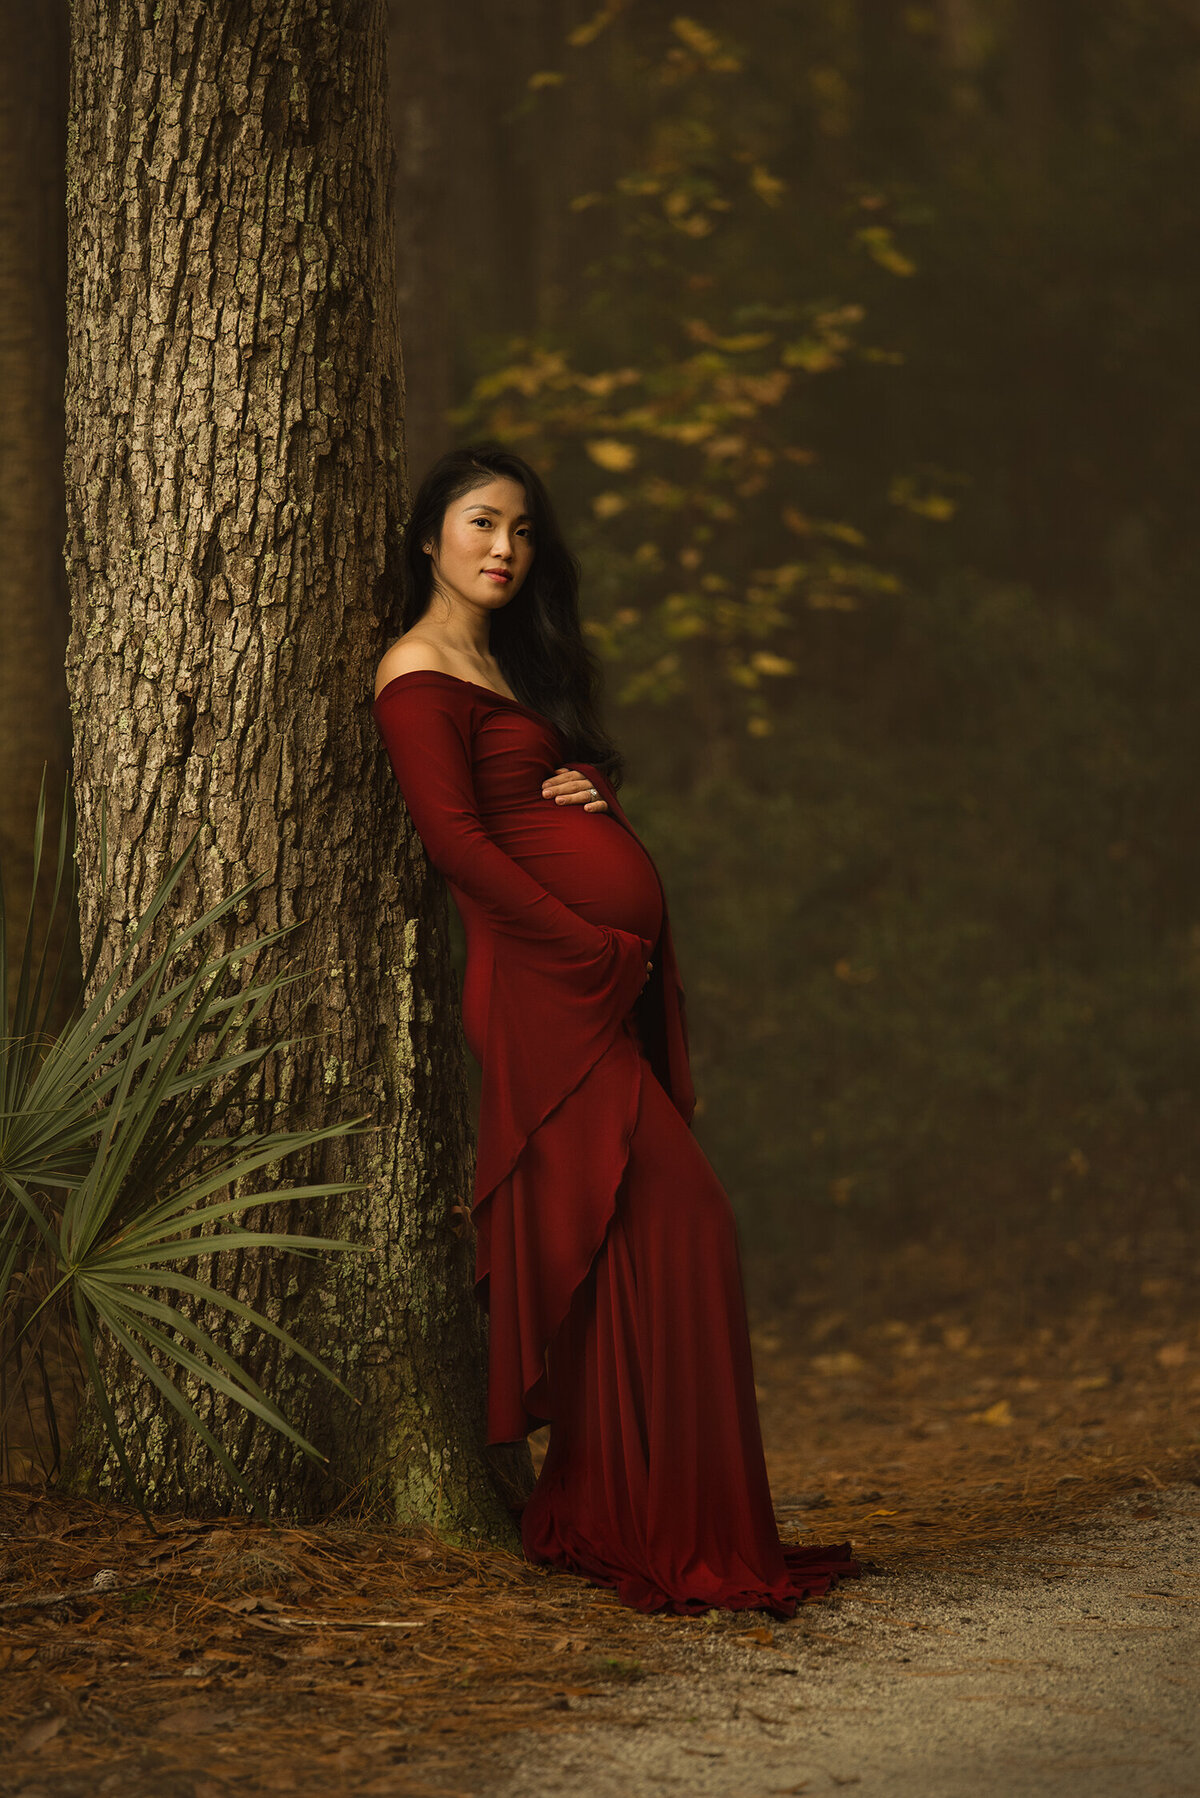 Jacksonville FL maternity photographer, maternity photography near me, get maternity photos taken Jacksonville FL